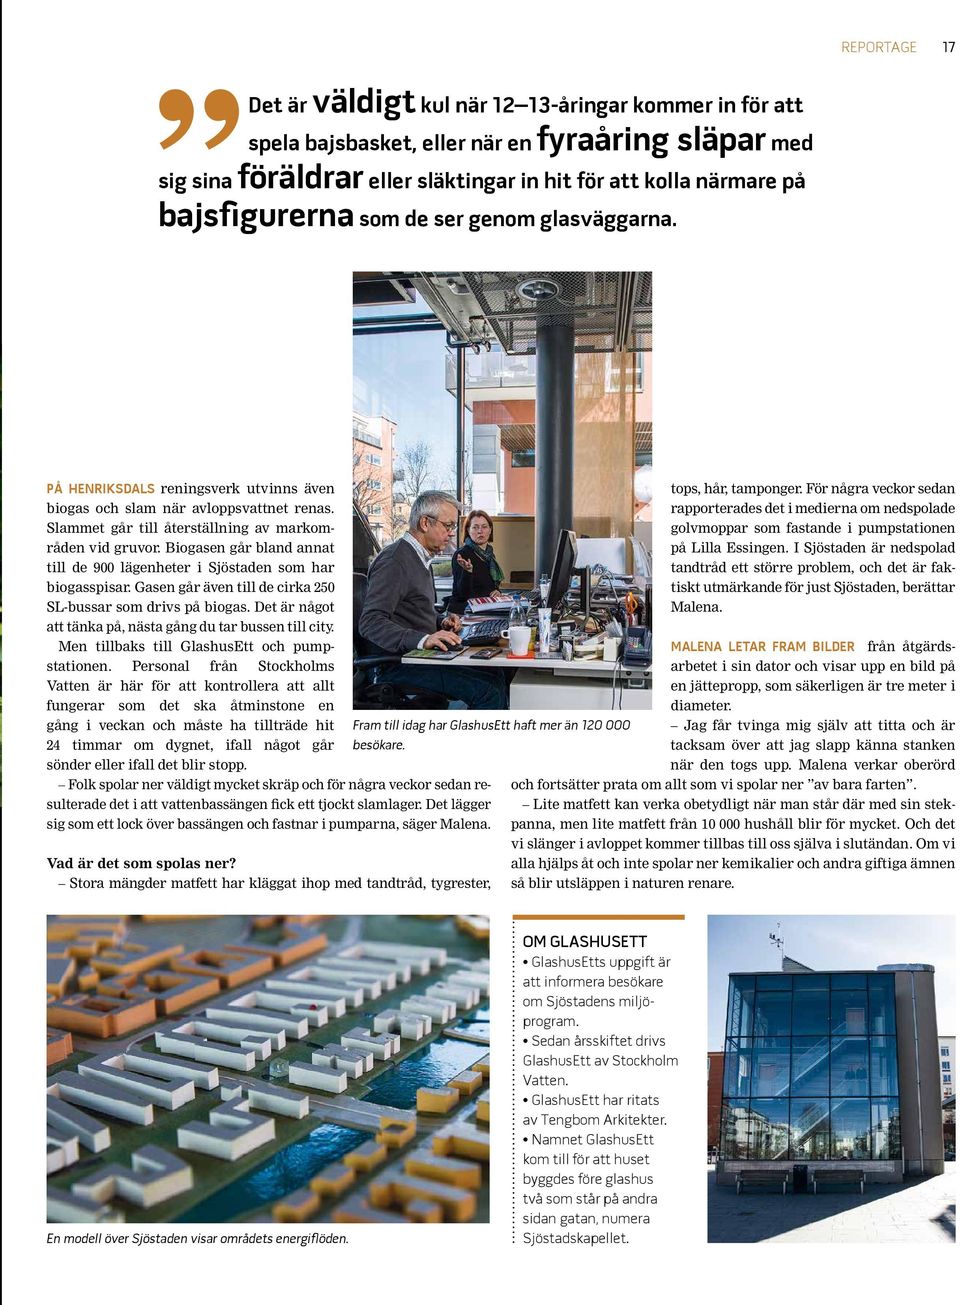 Biogasen går bland annat till de 900 lägenheter i Sjöstaden som har biogasspisar. Gasen går även till de cirka 250 SL-bussar som drivs på biogas.